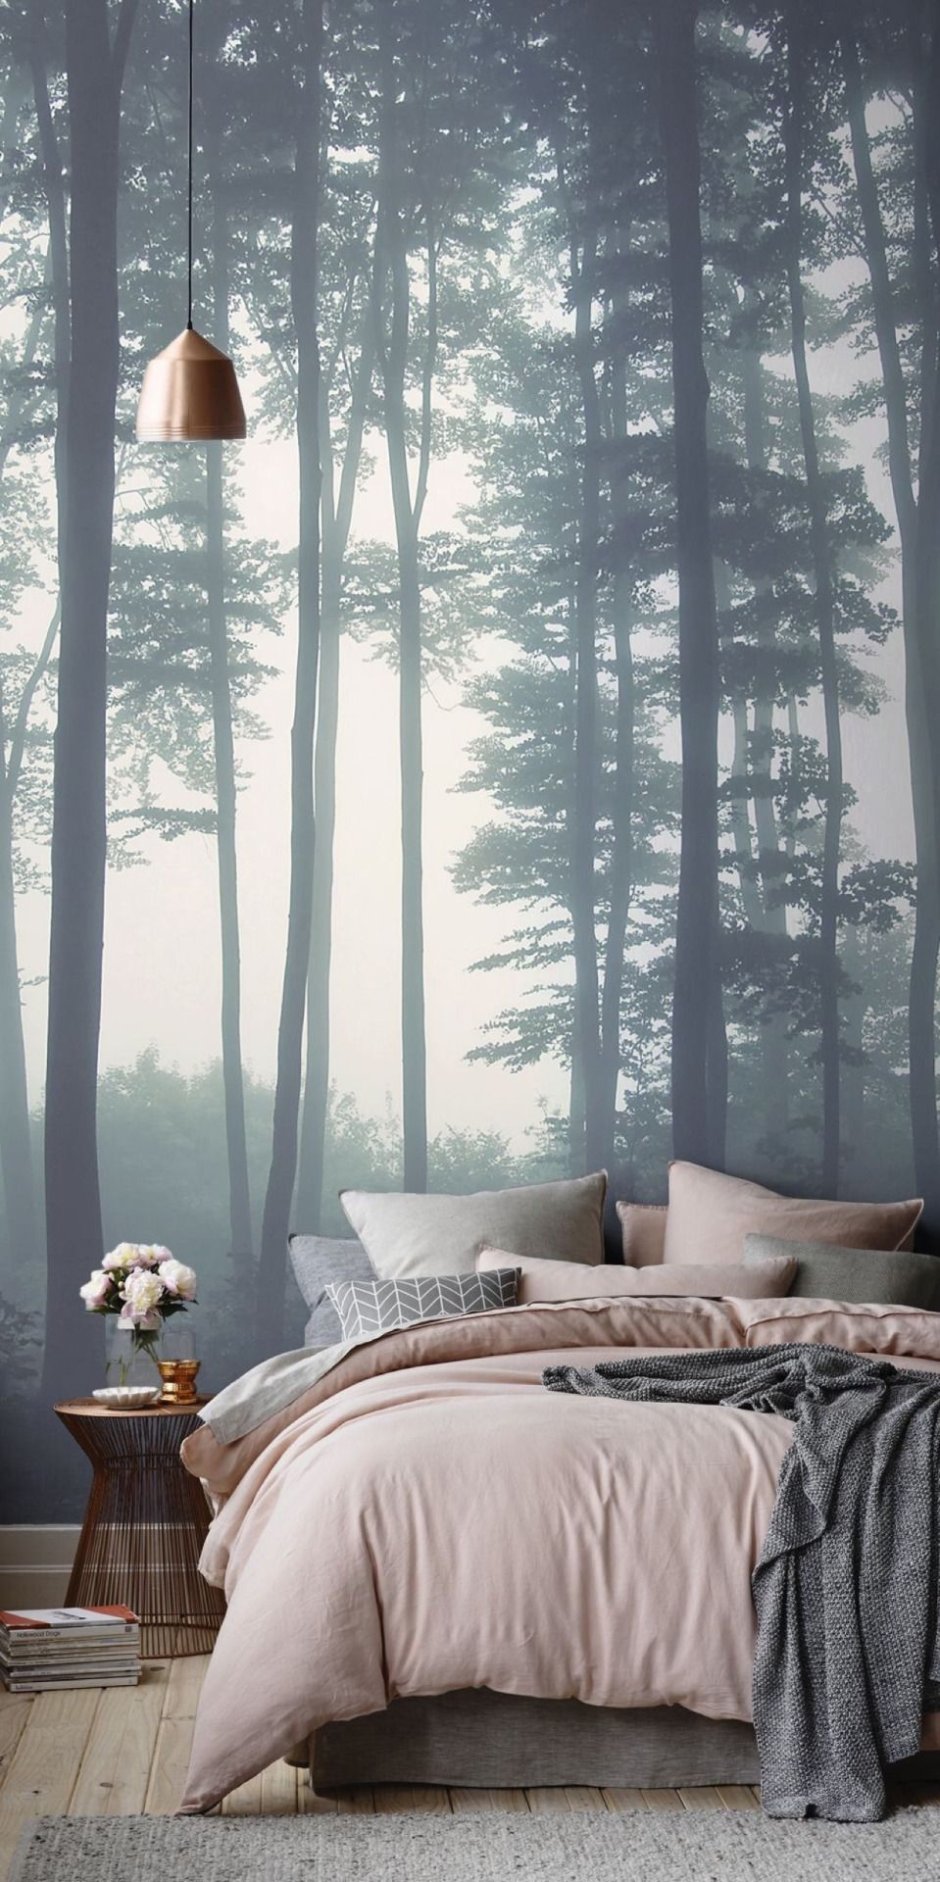 Панно на стену лес в тумане